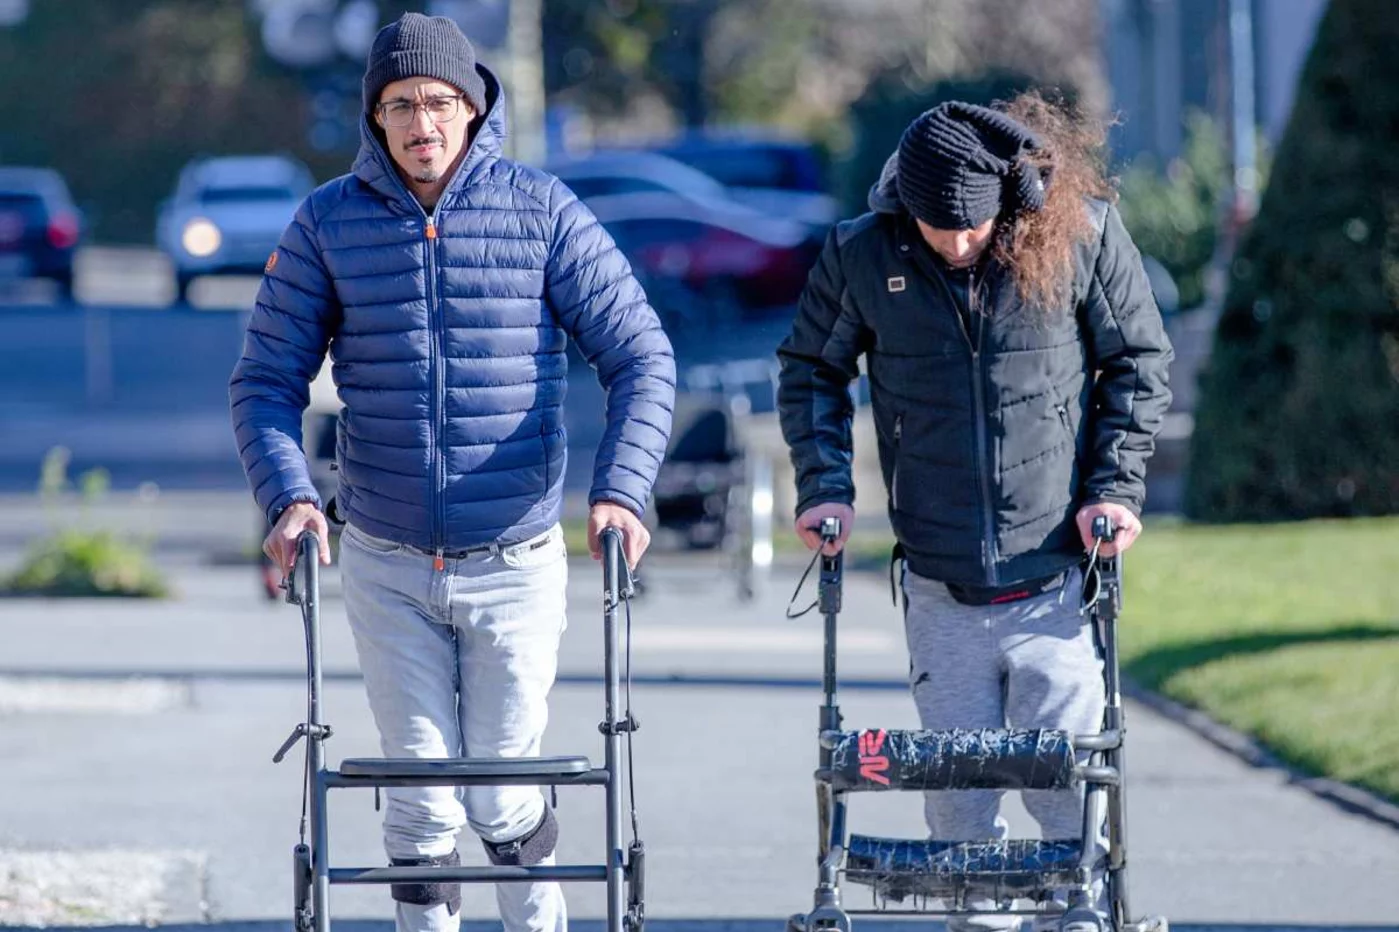 Dos pacientes caminan ayudados por sus respectivos andadores. Foto: JIMMY RAVIER/NEURORESTORE.